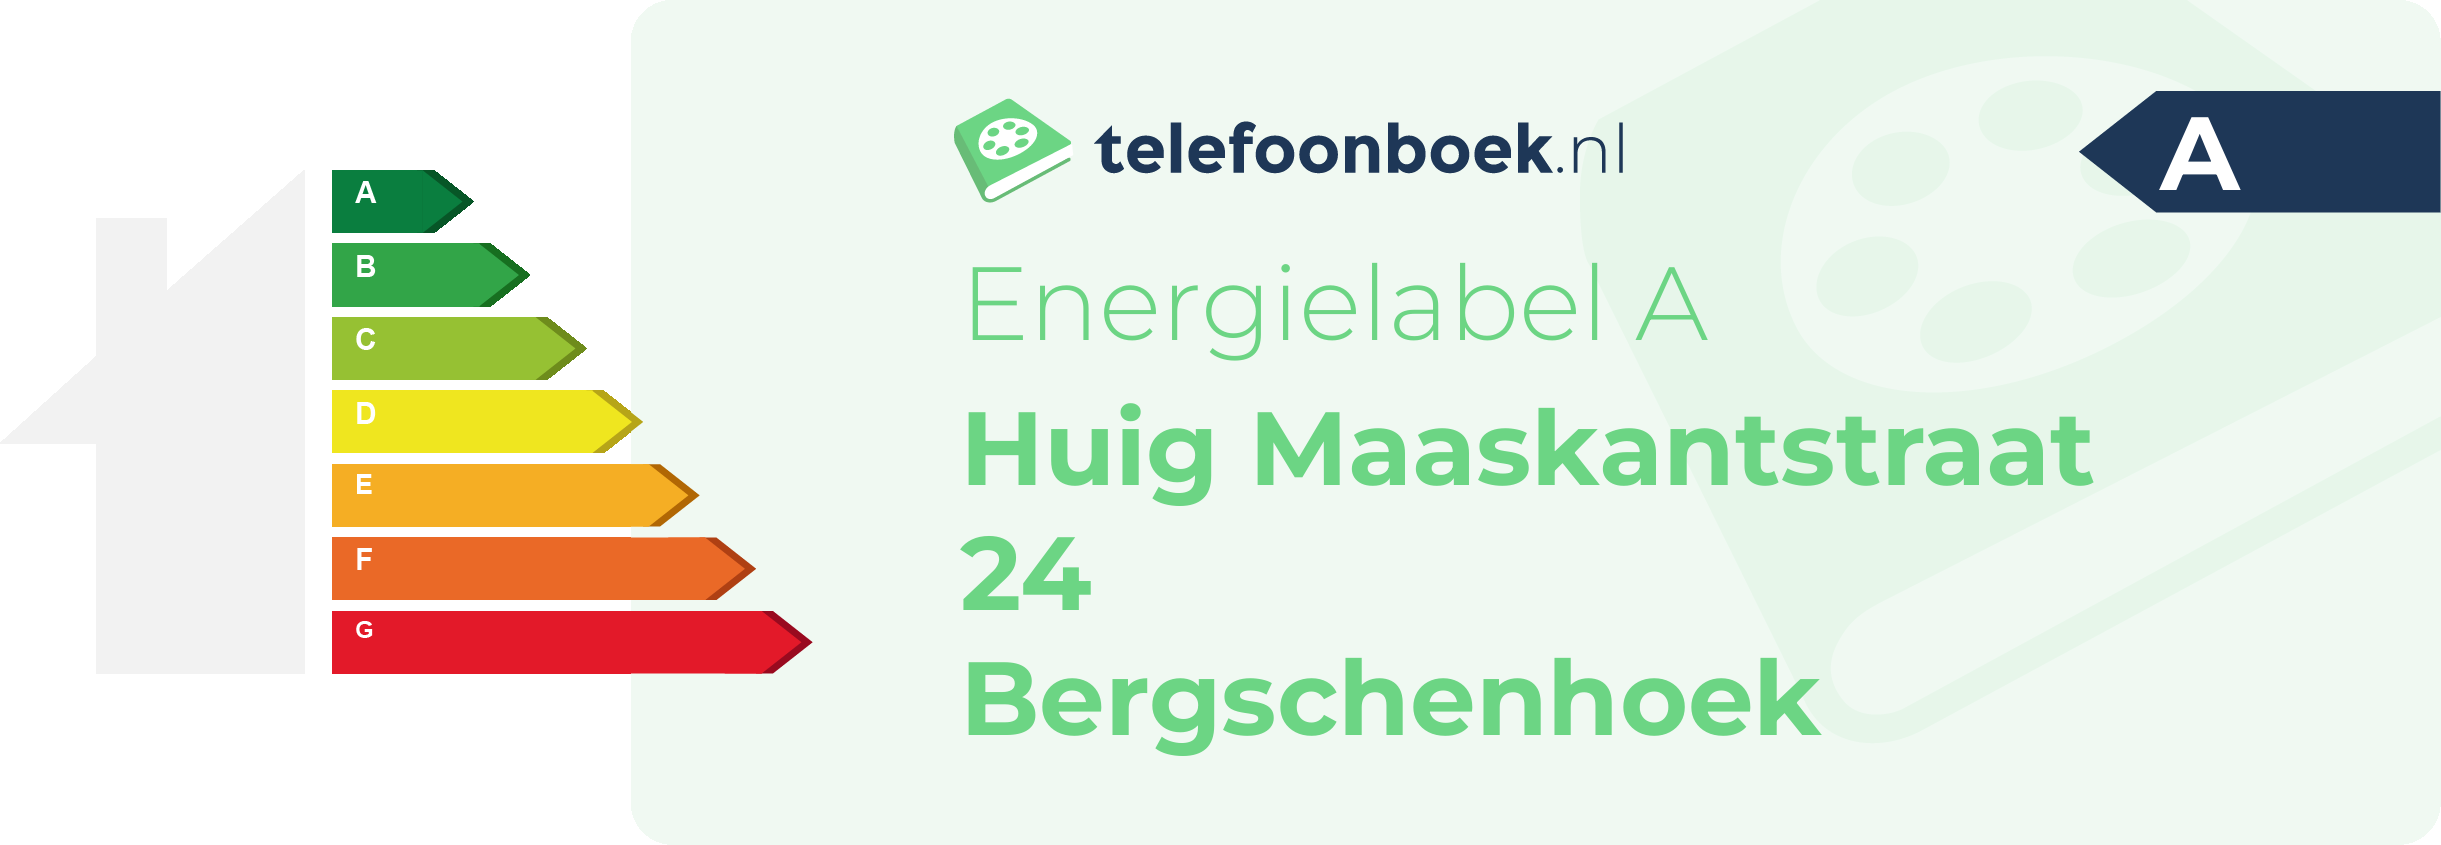 Energielabel Huig Maaskantstraat 24 Bergschenhoek